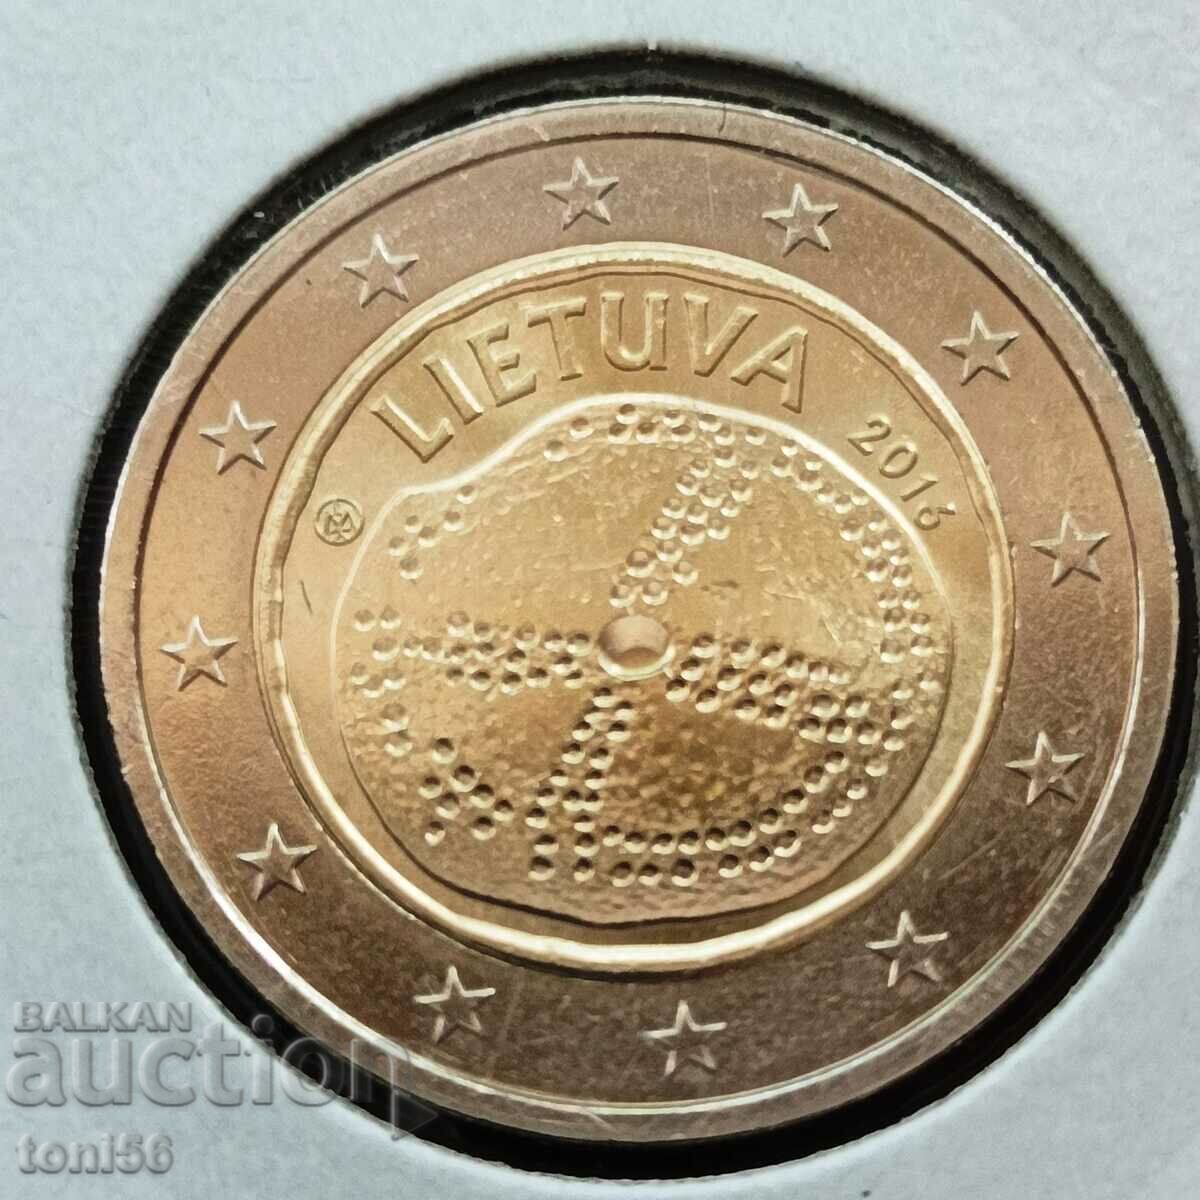 Lituania 2 euro 2016